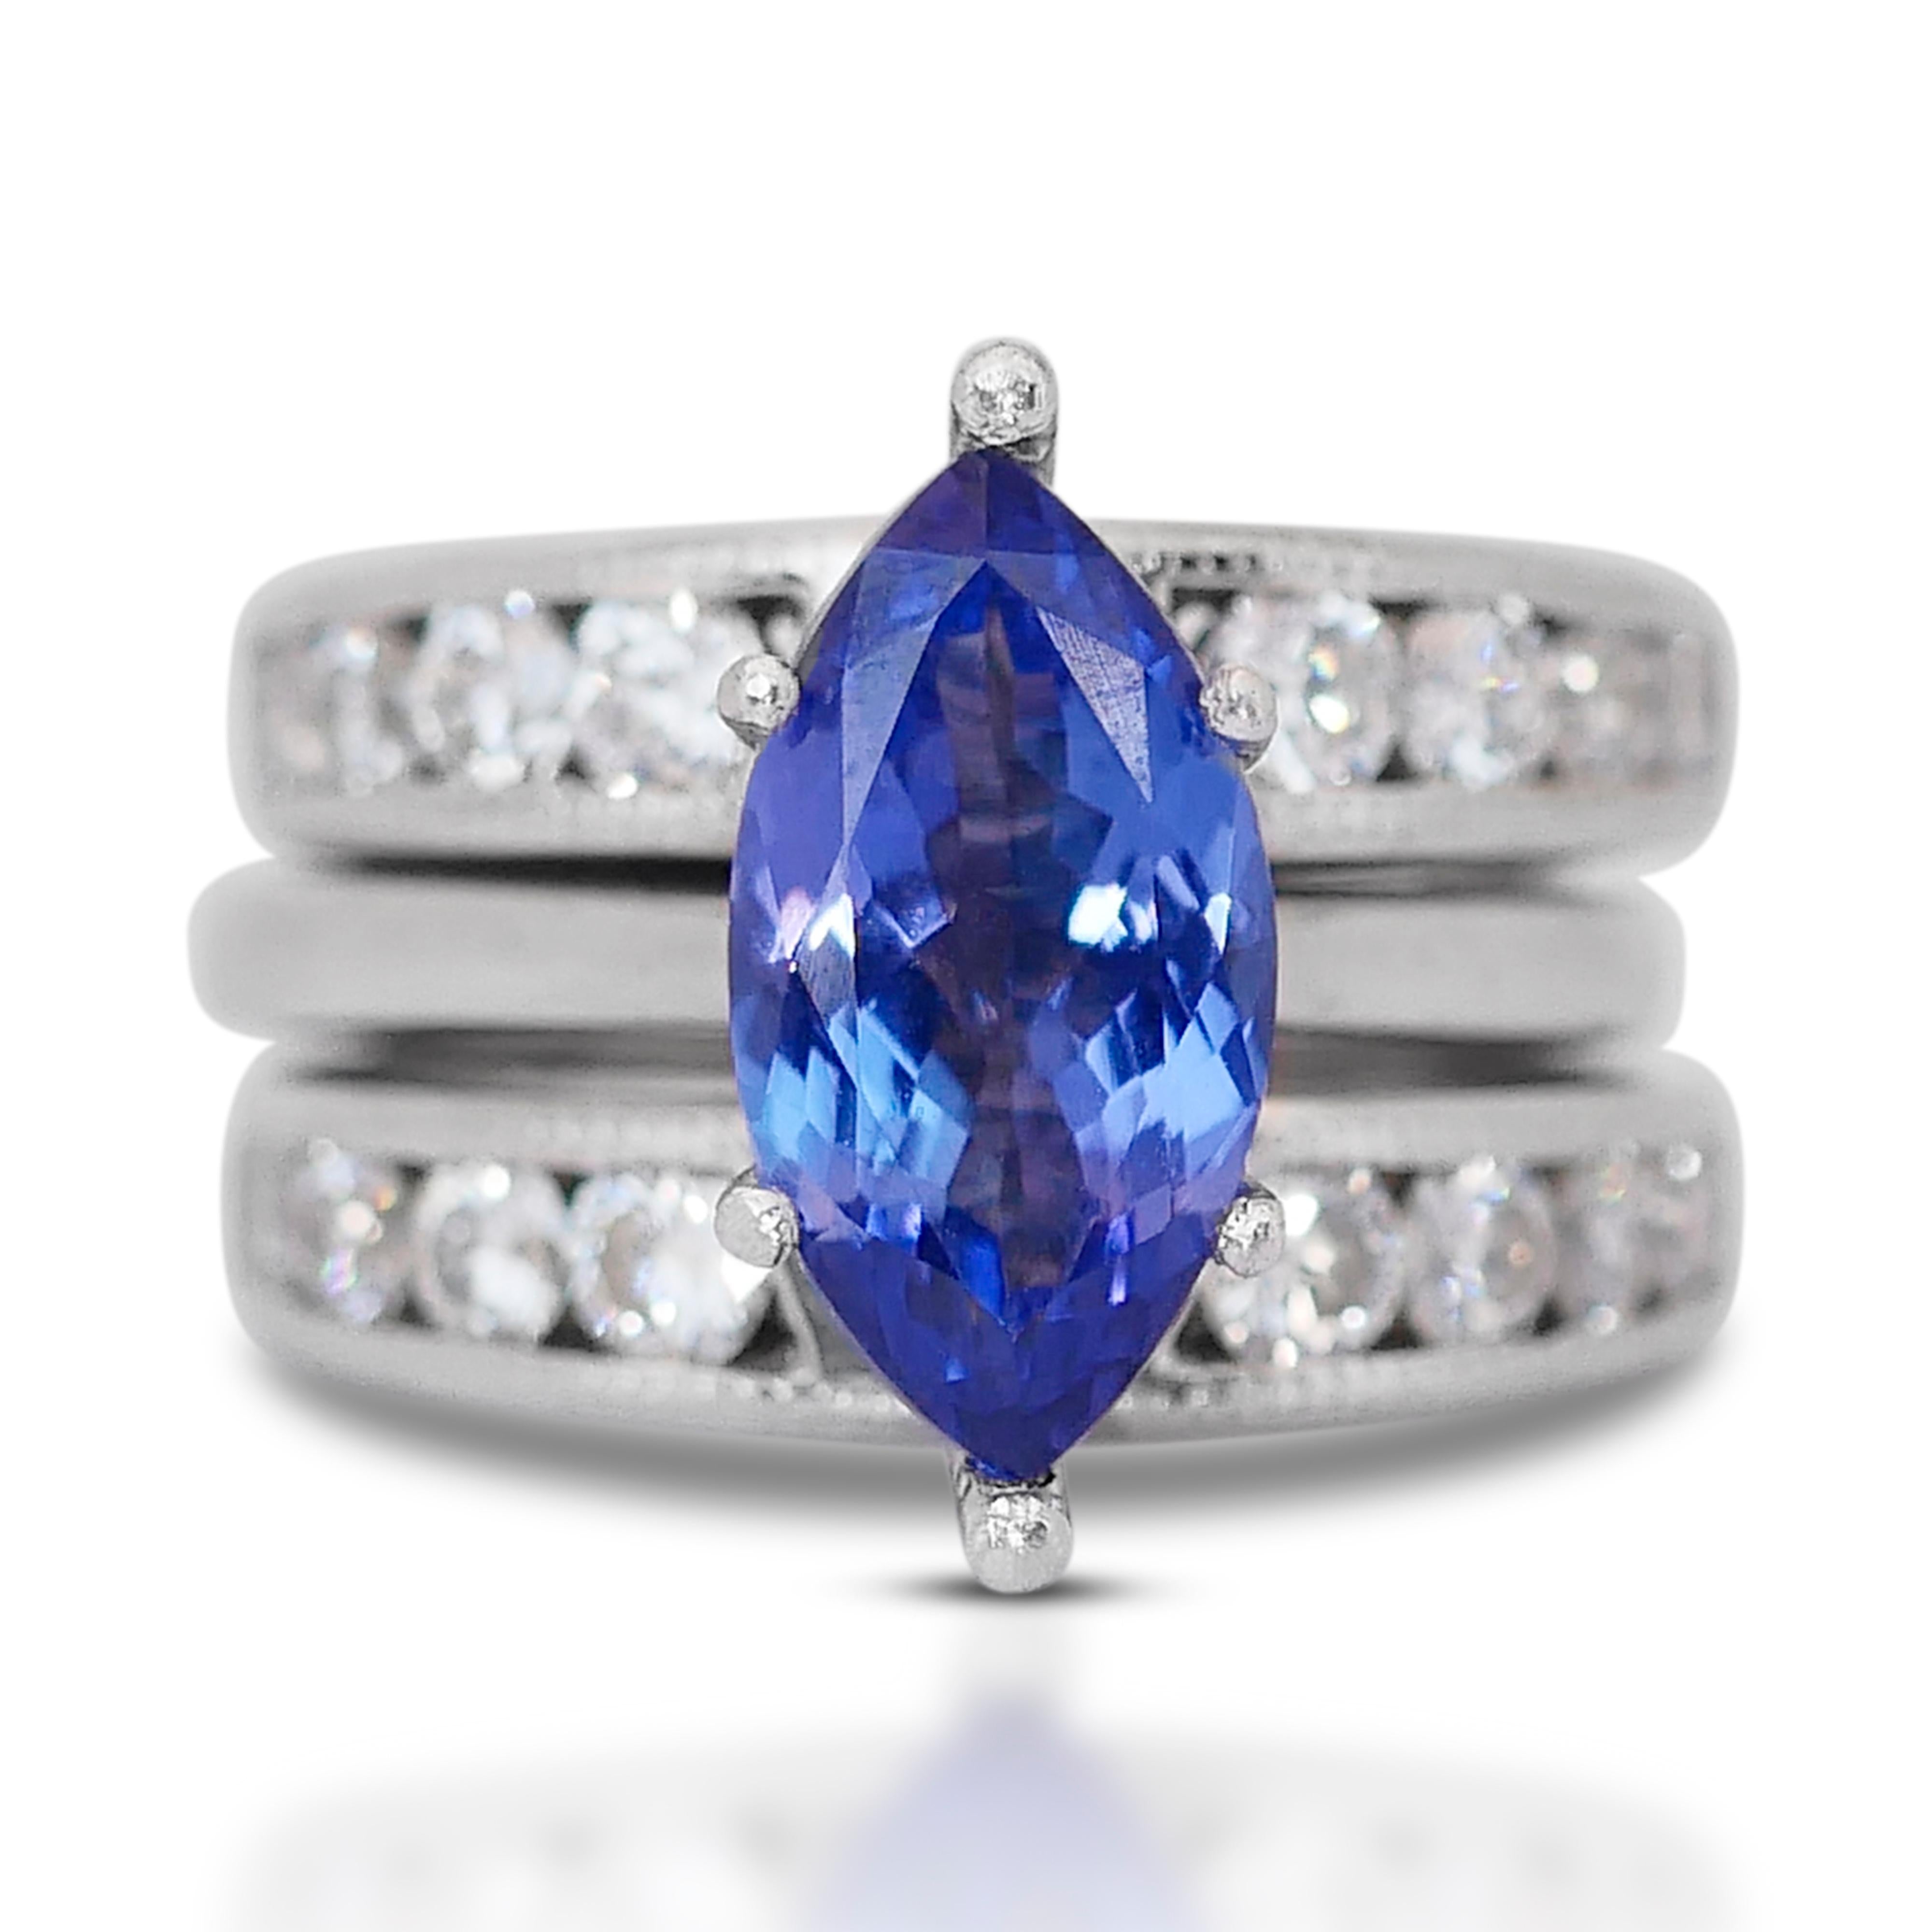 Dieser exquisite Ring strahlt Eleganz und Raffinesse aus. Im Mittelpunkt steht ein bezaubernder Tansanit, der von einem schimmernden Diamantenkranz umgeben ist.

In seinem Zentrum ruht ein prächtiger Tansanit mit einem beachtlichen 2,75-Karat-Stein